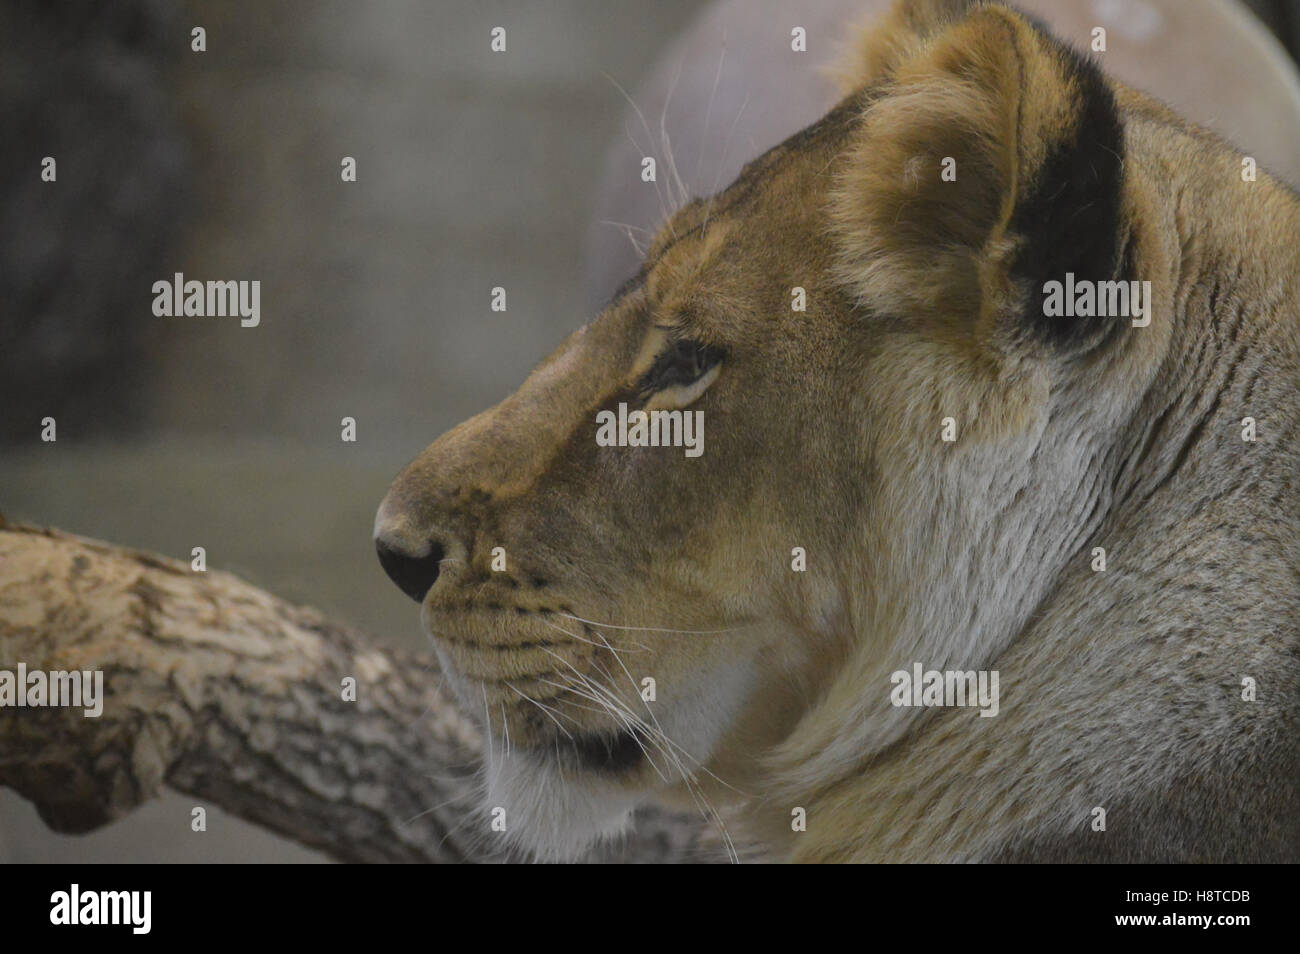 Lion Stockfoto